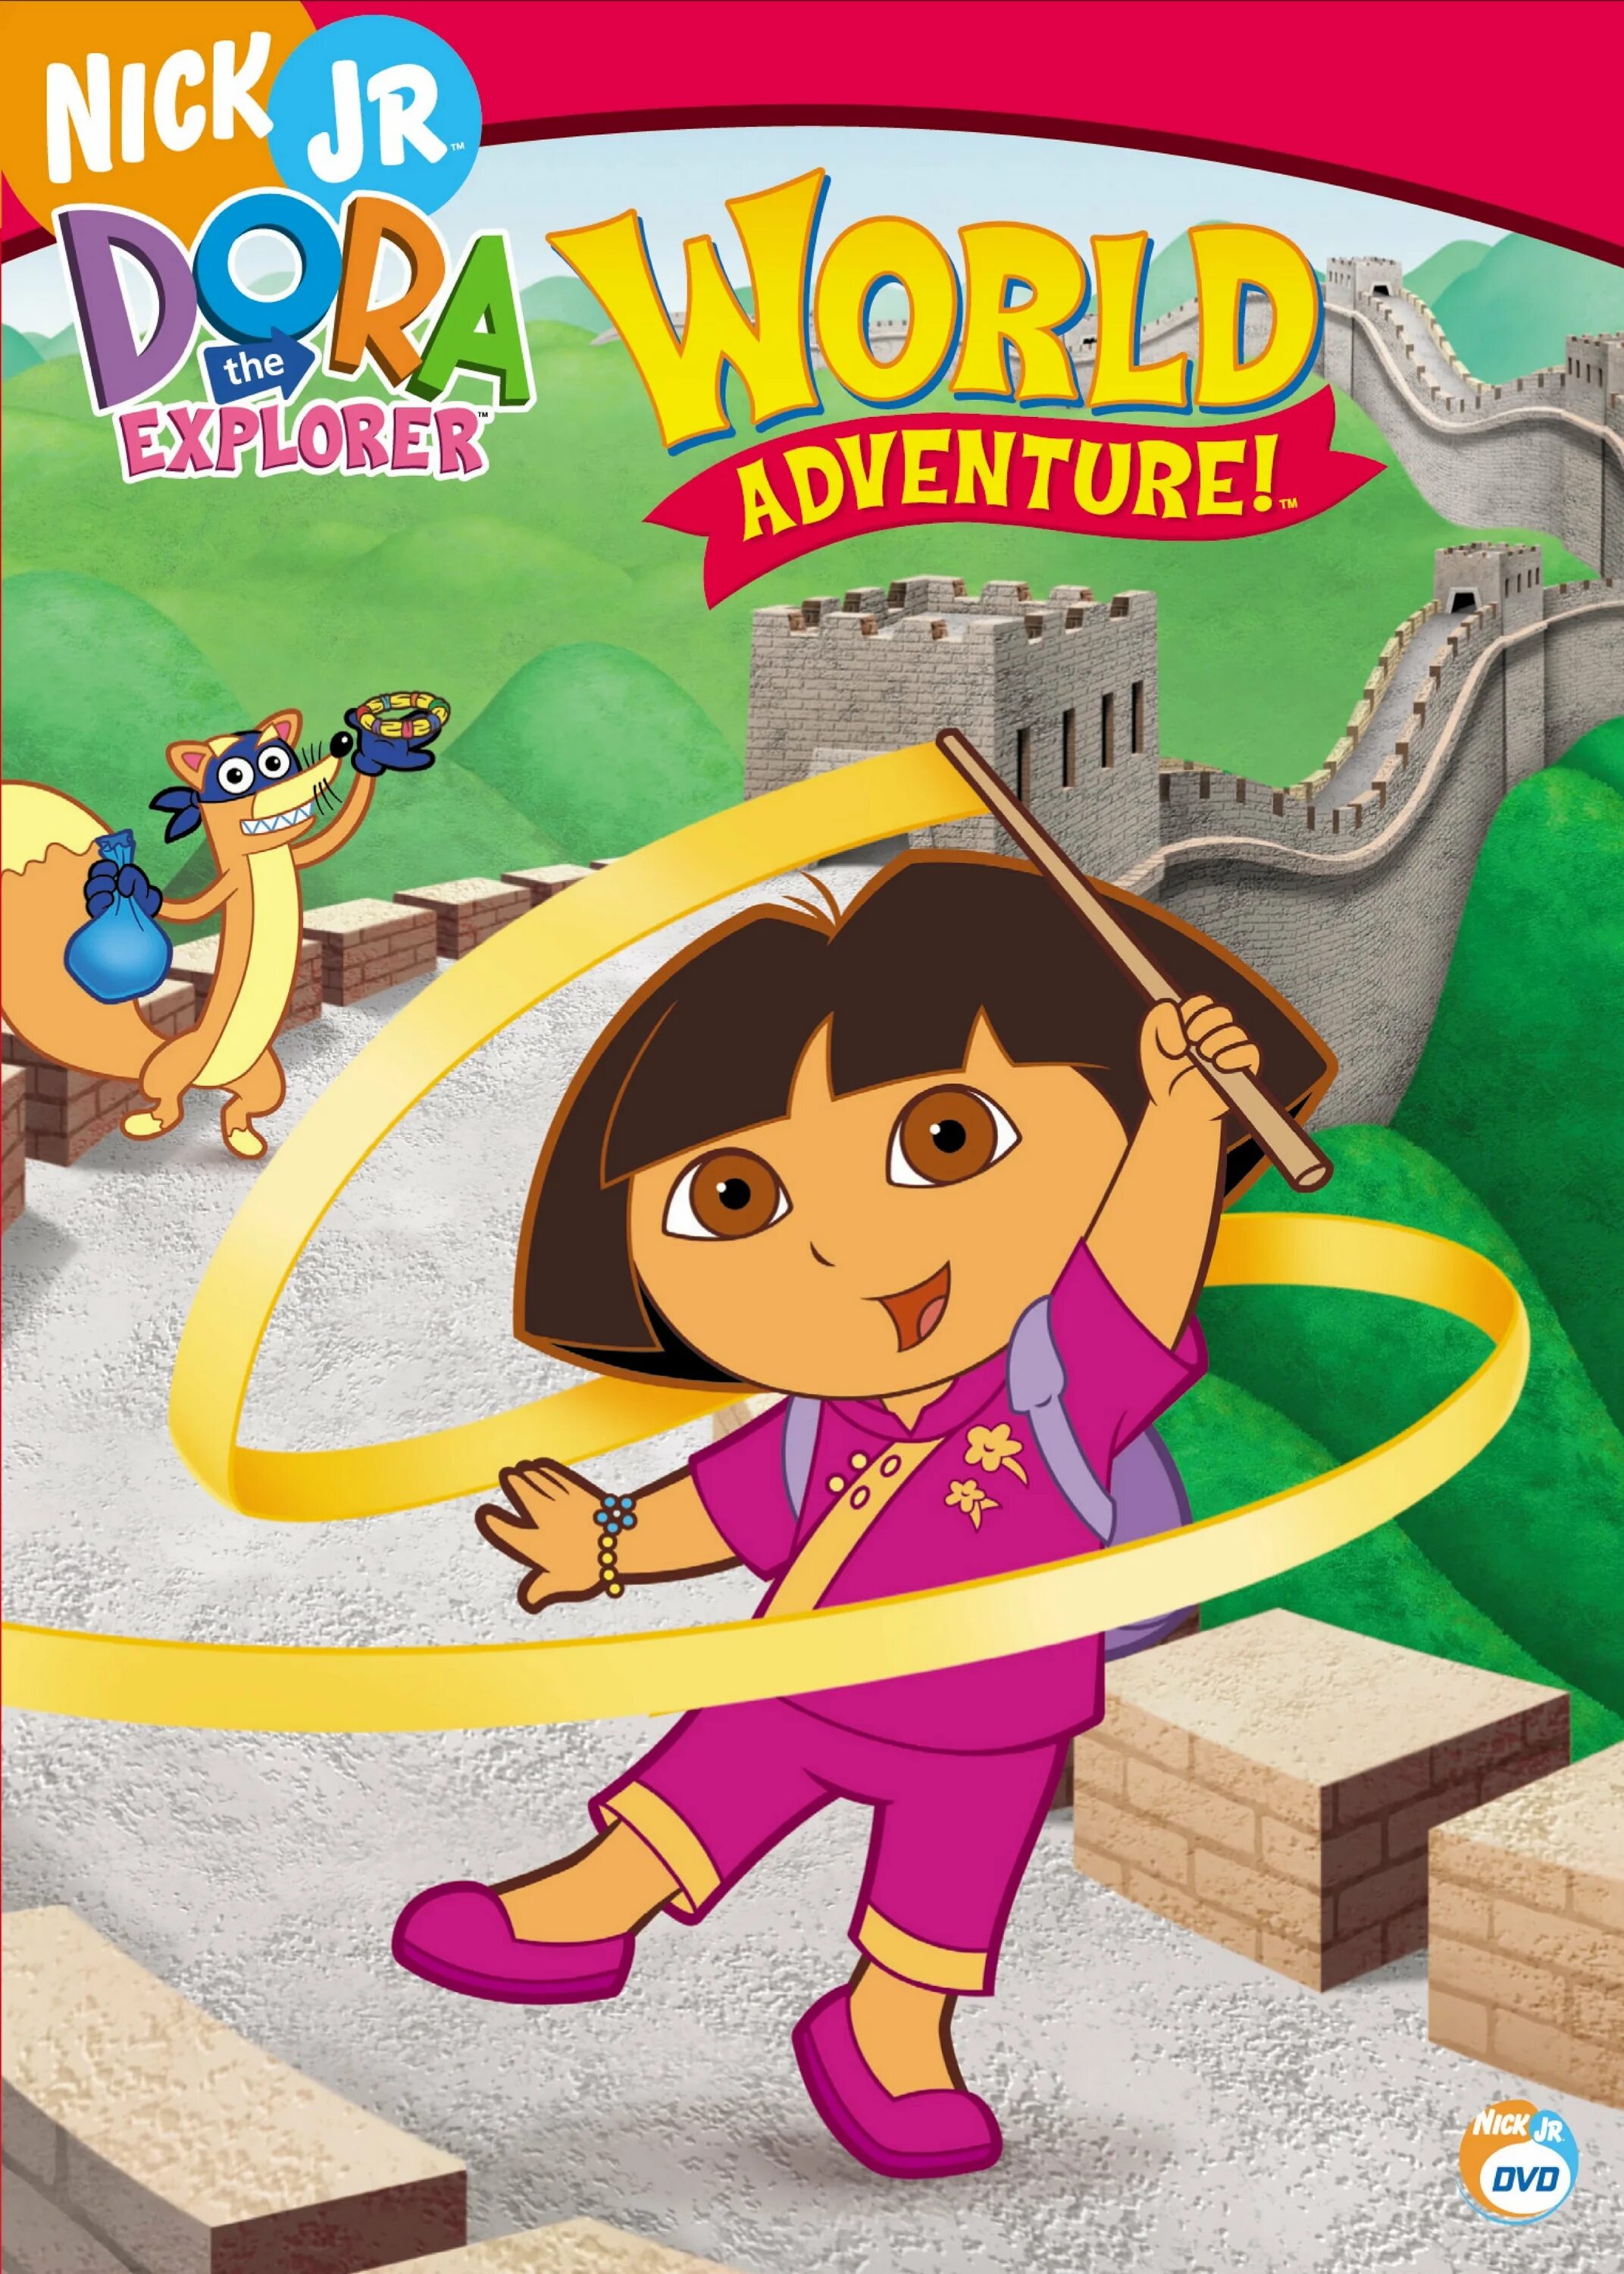 Doras world adventure. Dora the Explorer Adventures.